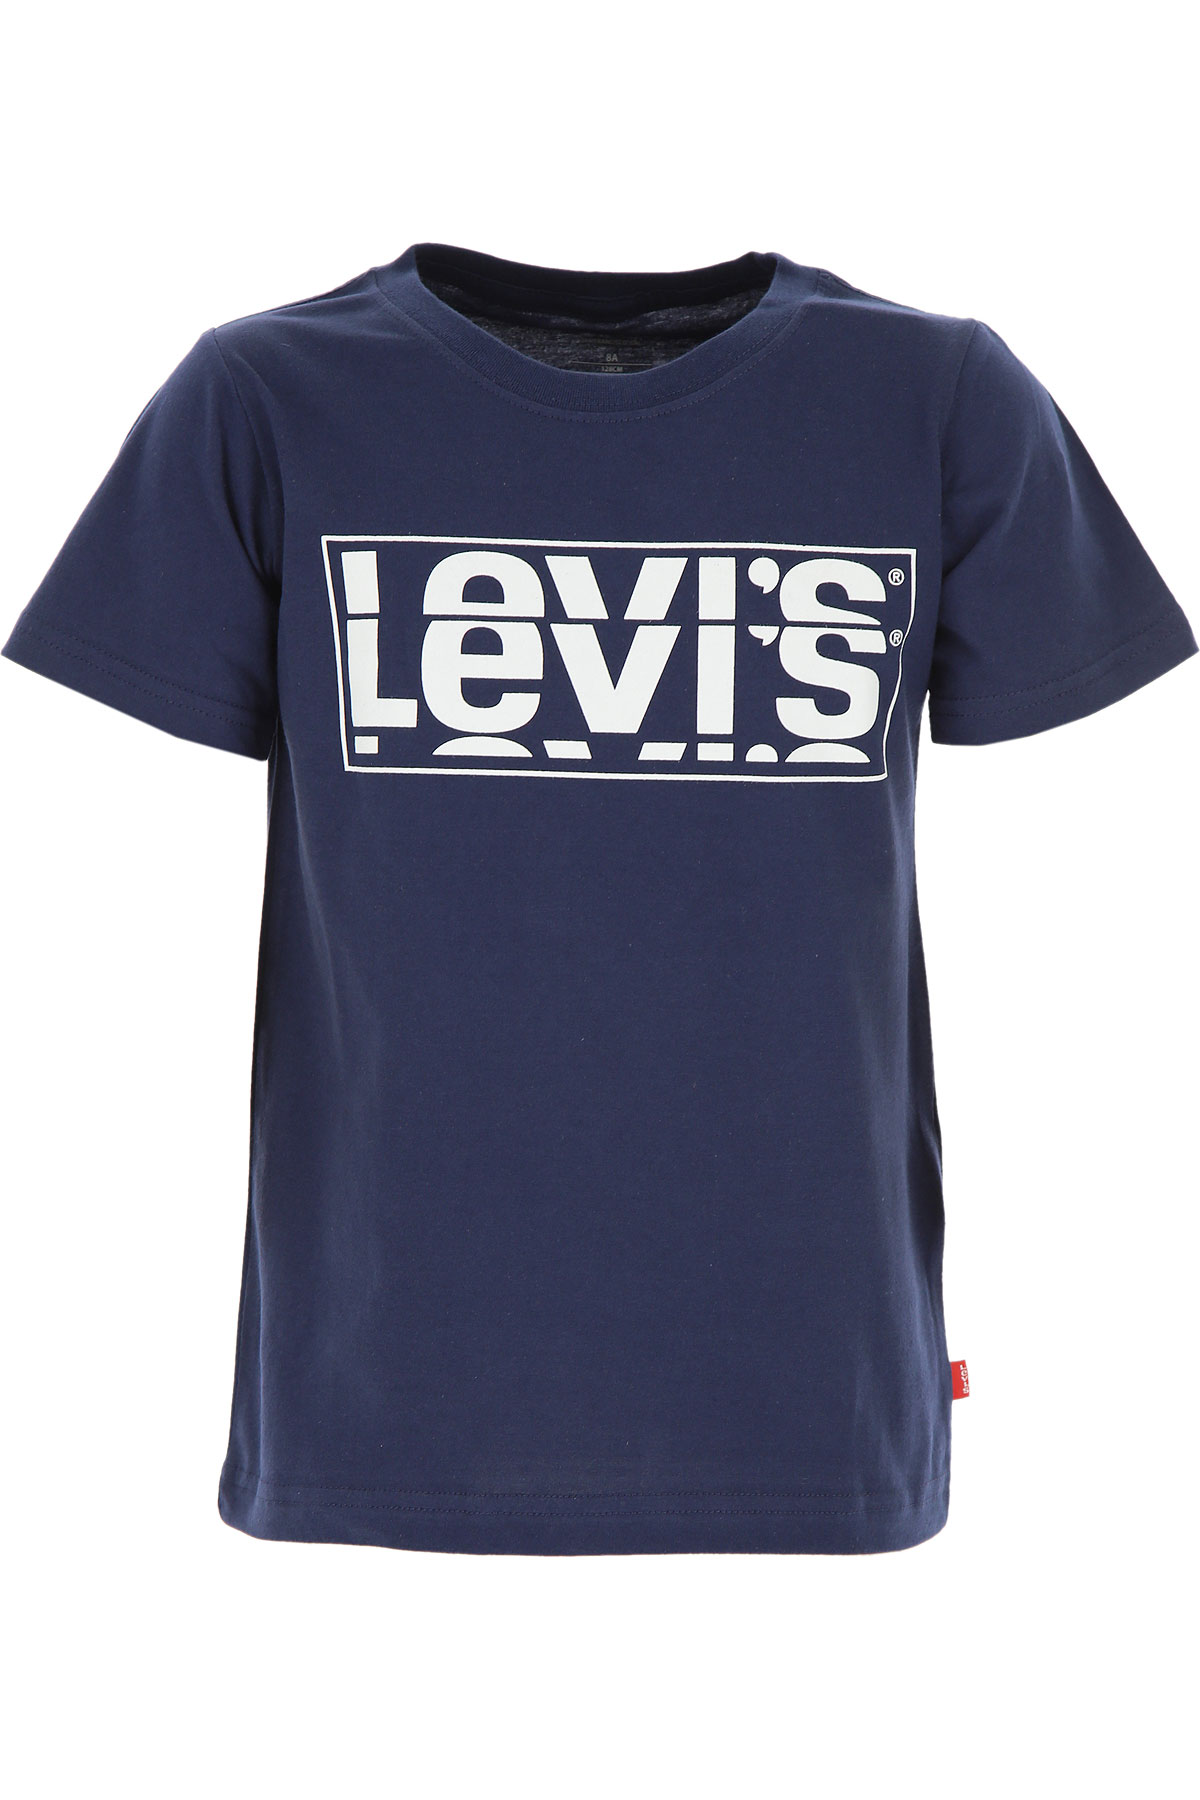 Levis Kinder T-Shirt für Jungen Günstig im Sale, Marine blau, Baumwolle, 2017, 14Y 16Y 4Y 5Y 8Y